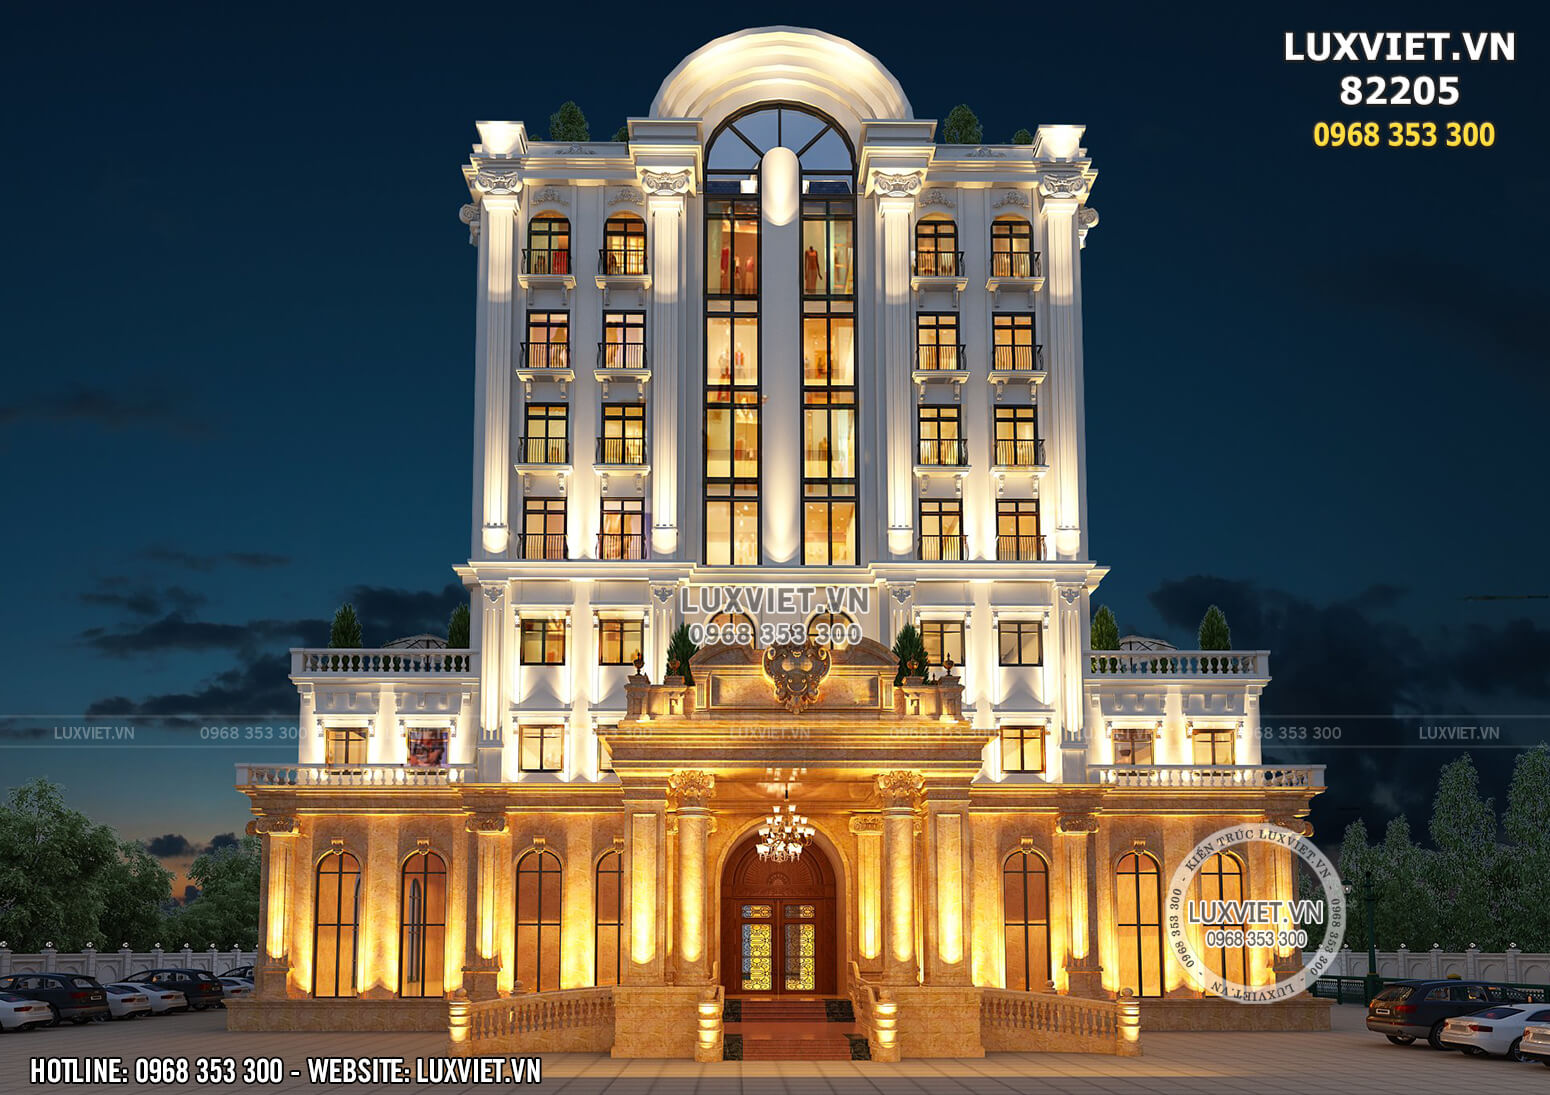 Hình ảnh: Khách sạn Quảng Ninh tân cổ điển 3 sao - LV 82205